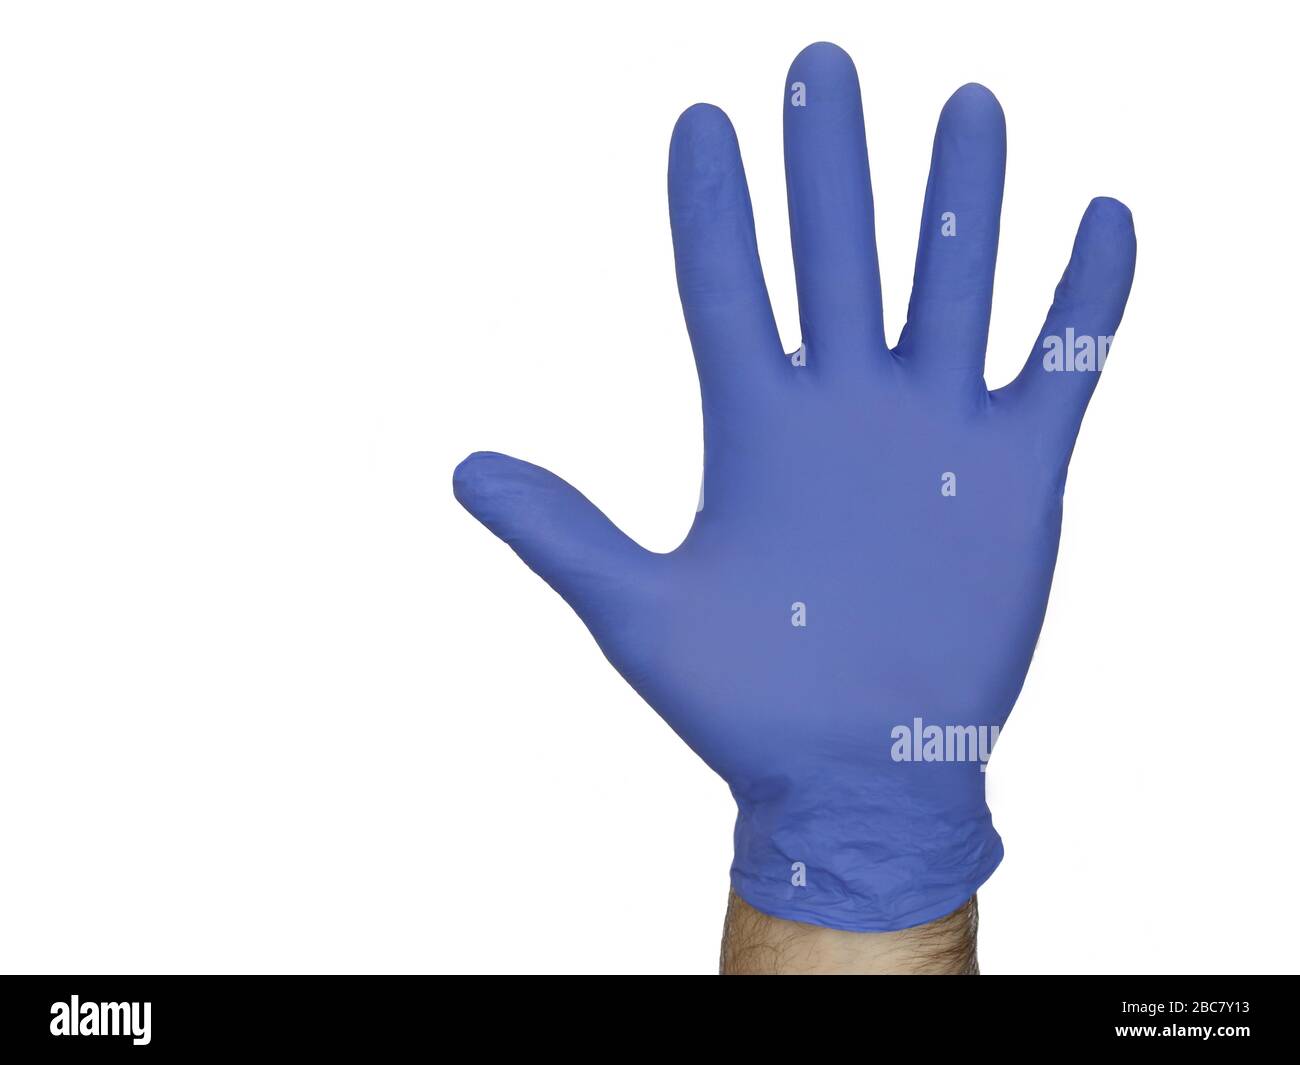 Una mano masculina que lleva un guante azul de nitrilo se muestra aislada contra un fondo blanco. Foto de stock